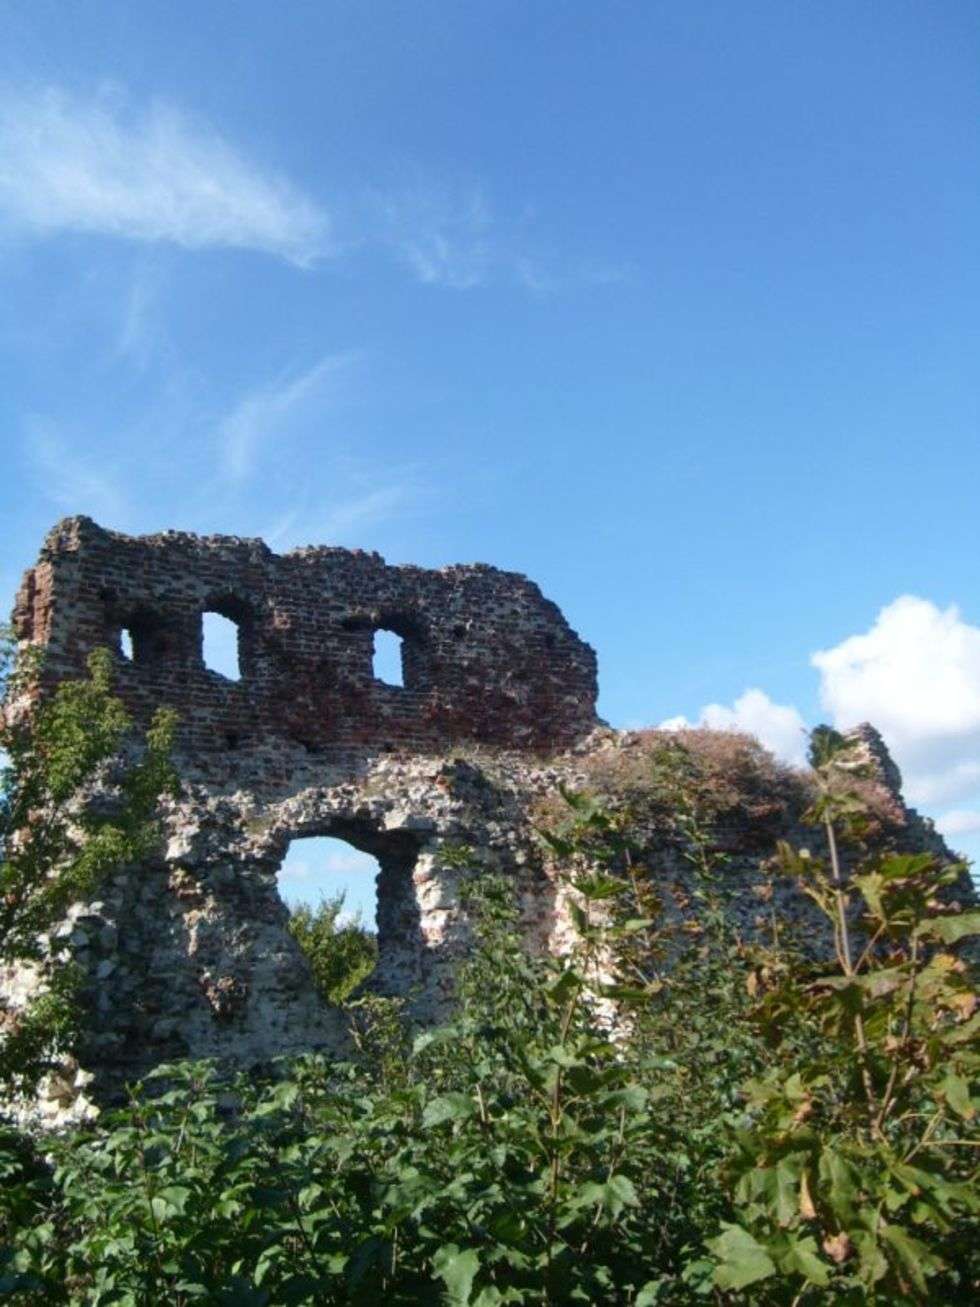  Rowerem przez rezerwaty przyrody. Ruiny zamku w Bochotnicy